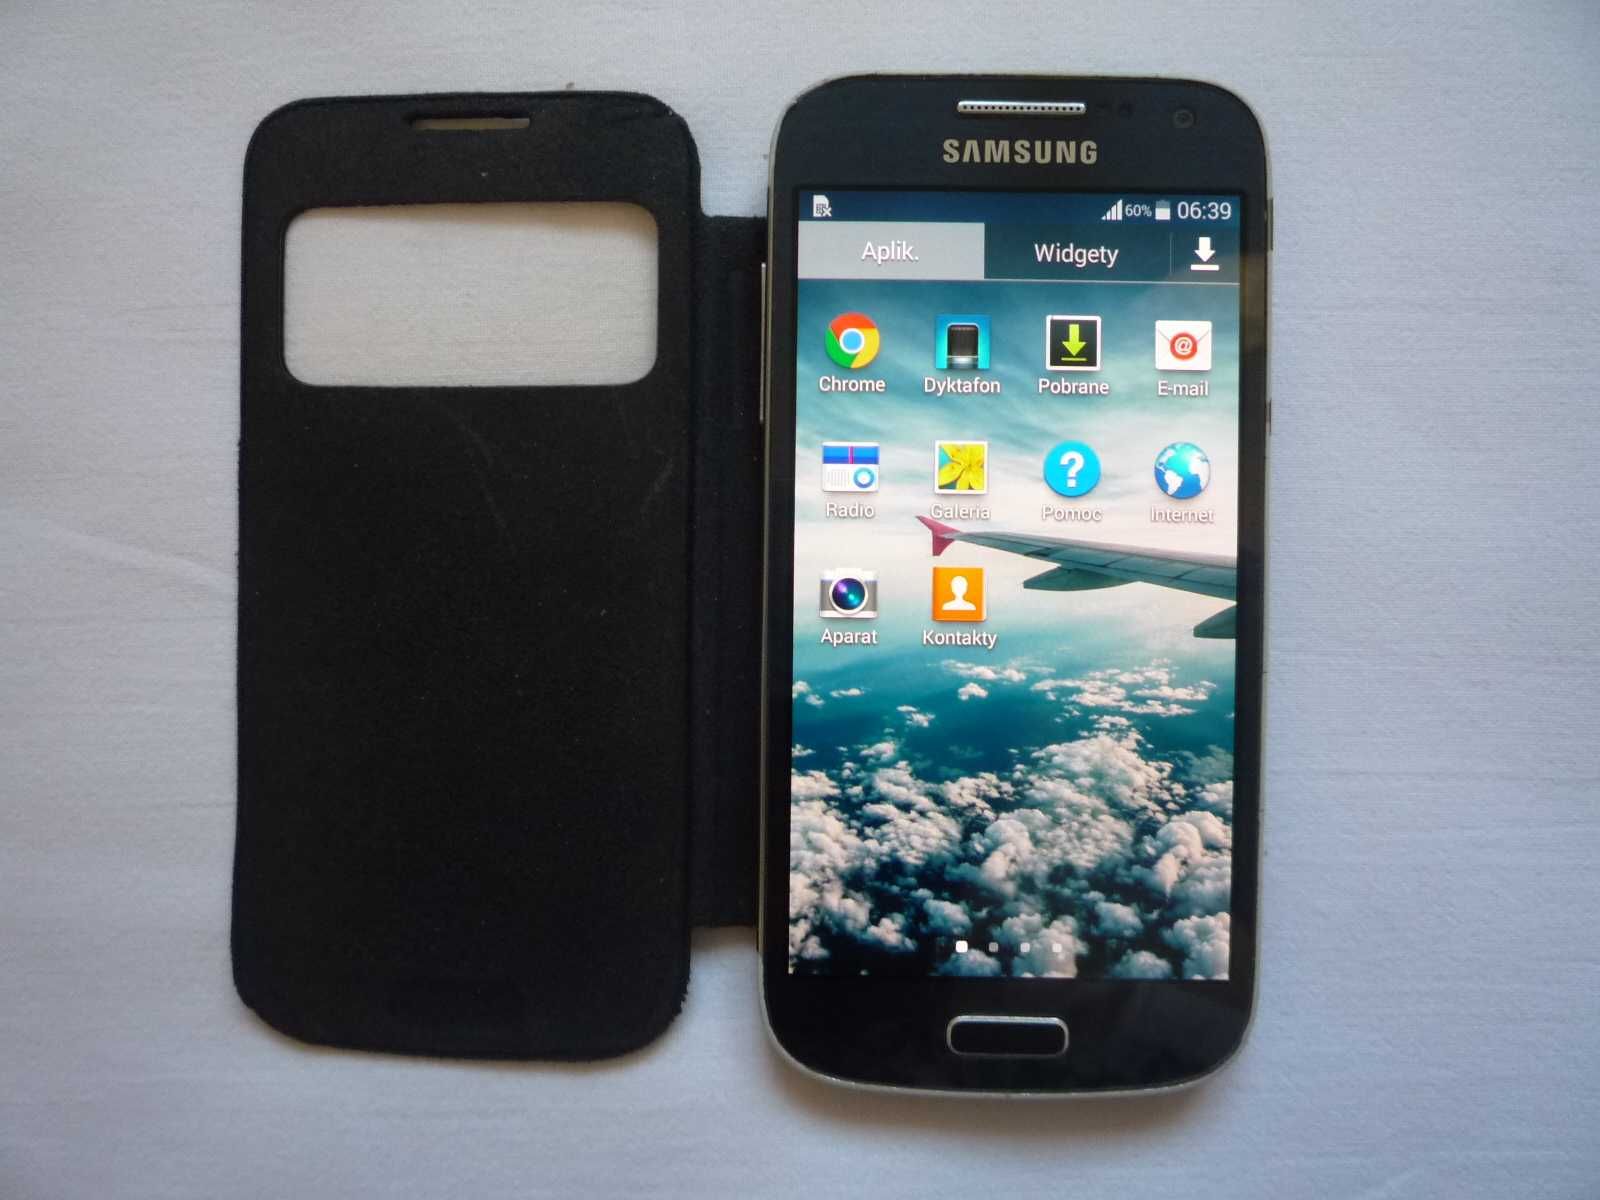 Samsung Galaxy S4 mini Model GT - I9195